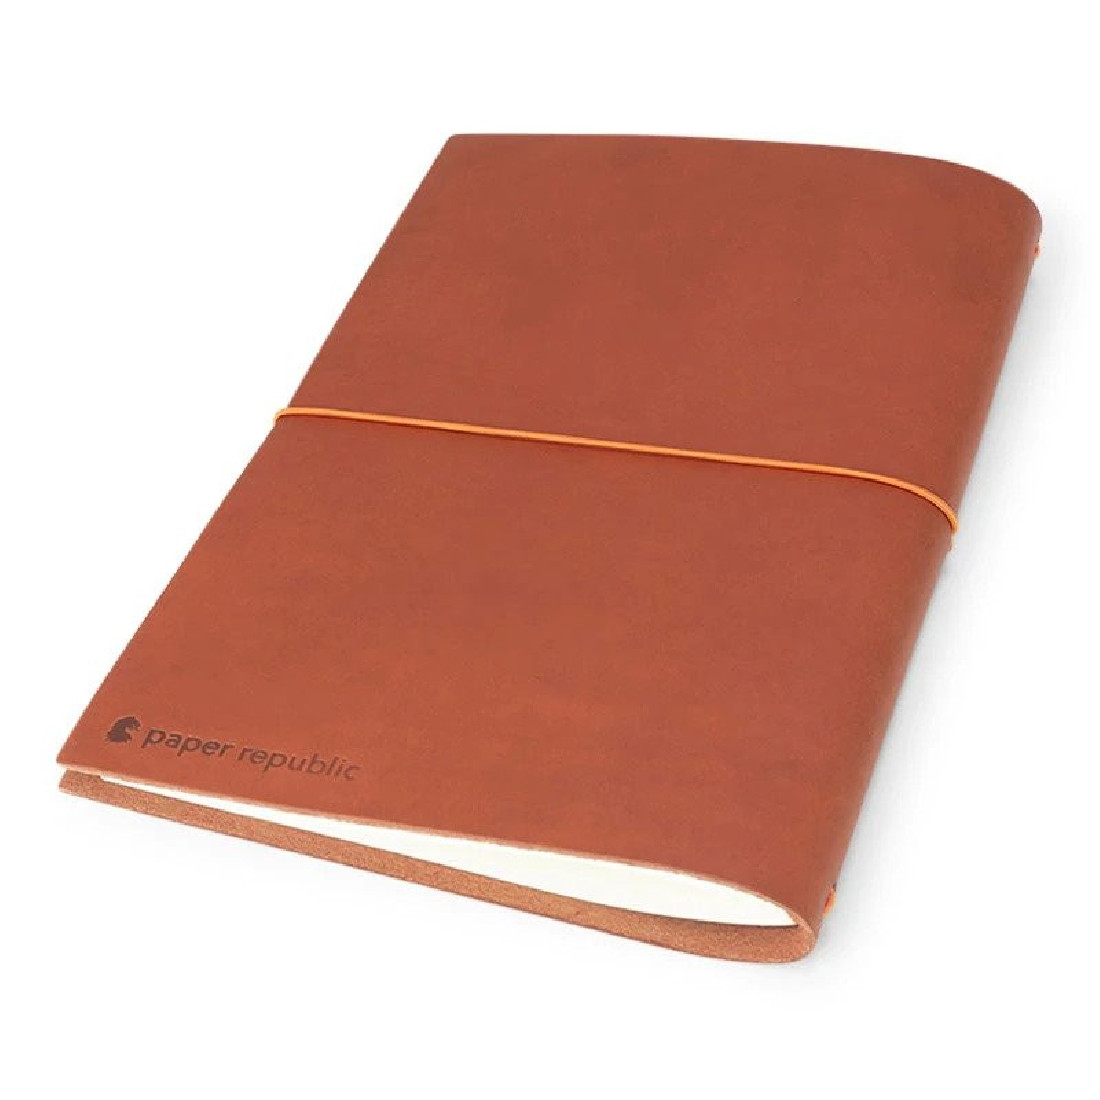 Paper Republic grand voyageur [xl] | cognac leather journal